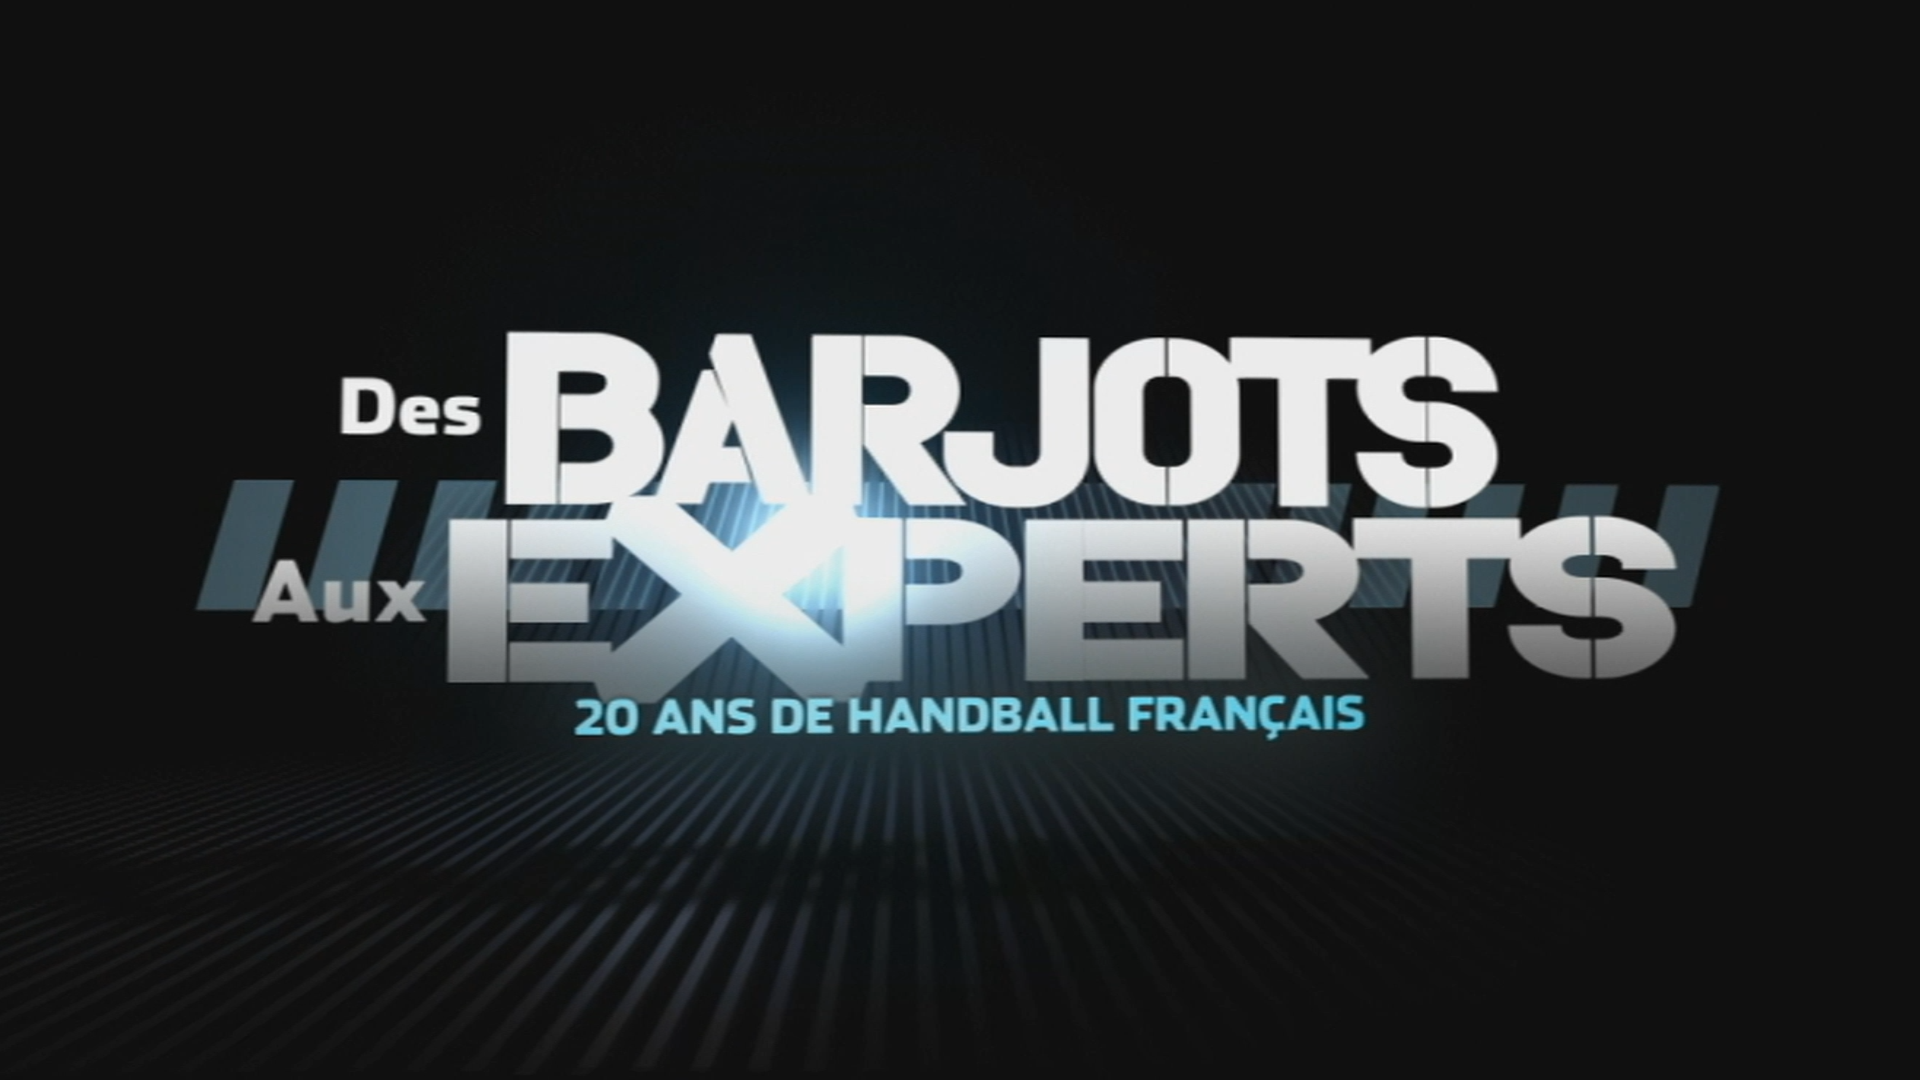 Des Barjots aux Experts, 20 ans de handball français